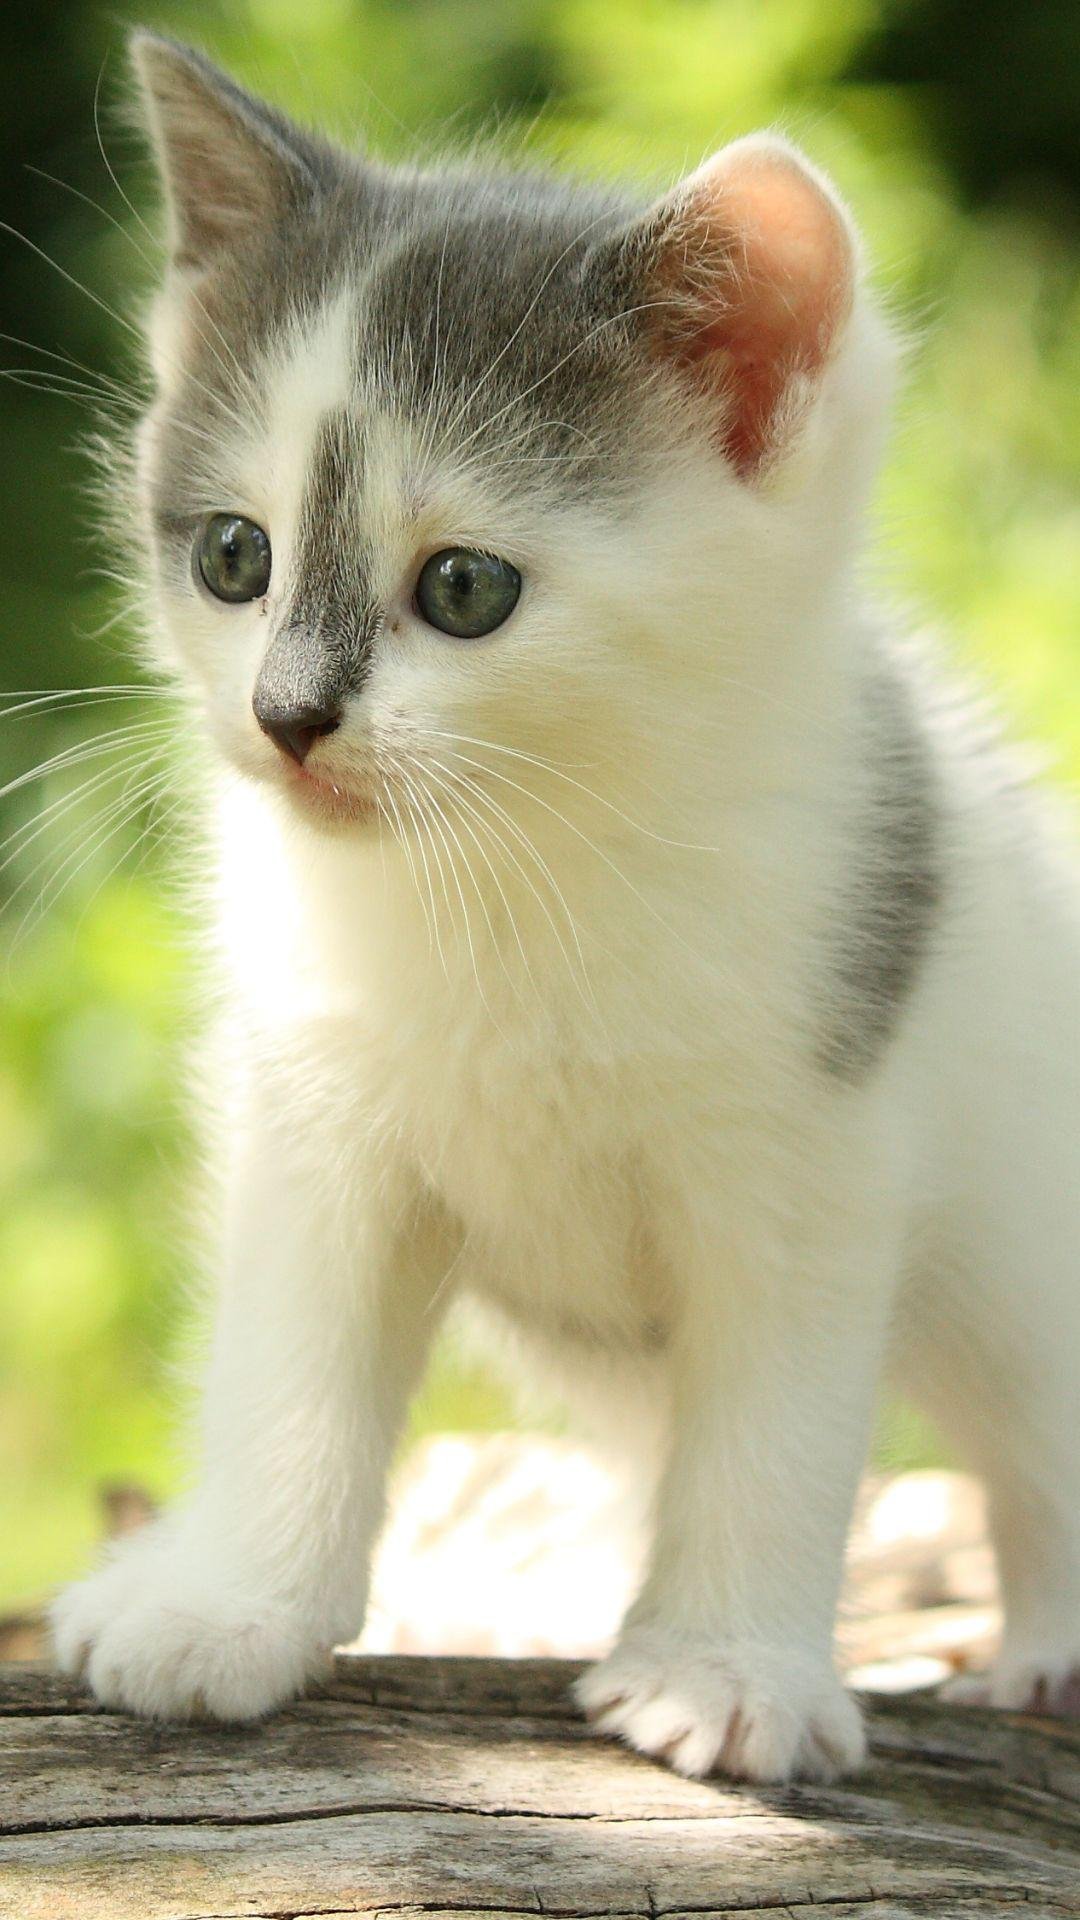 Cute Kitten - Cat